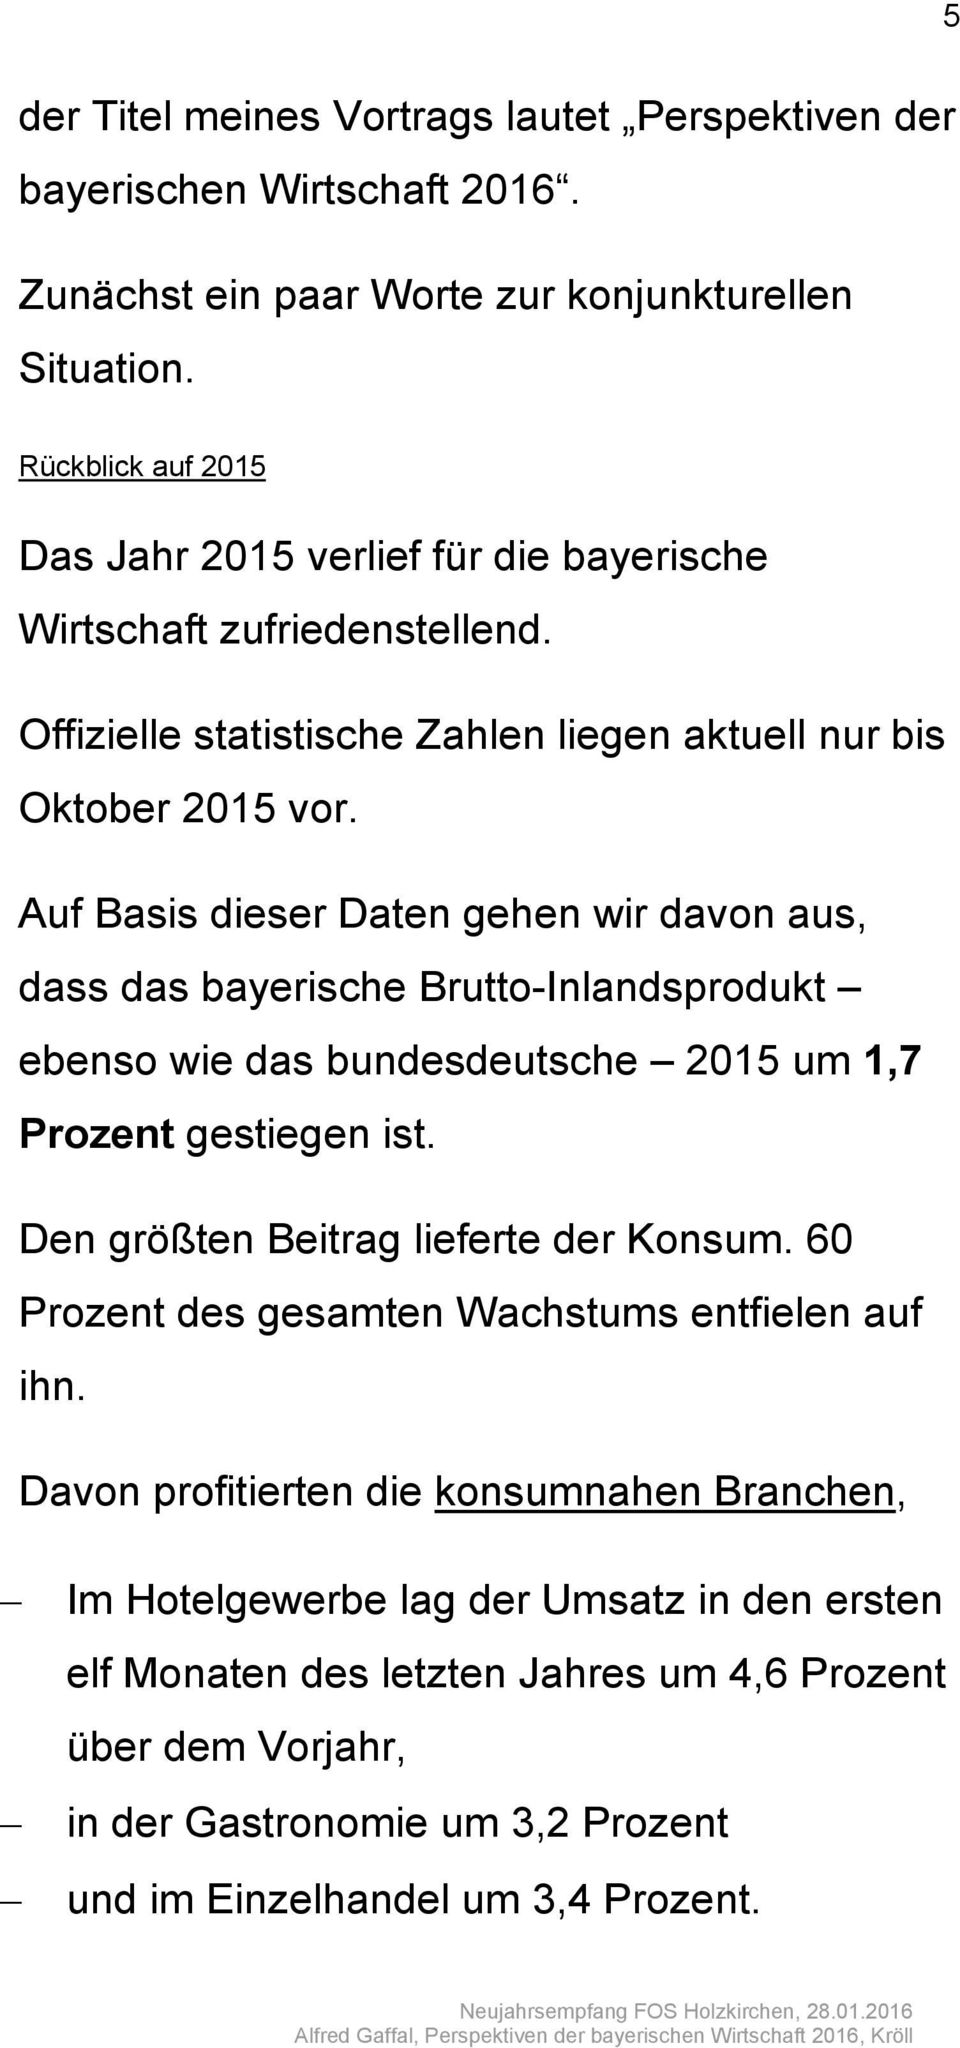 Auf Basis dieser Daten gehen wir davon aus, dass das bayerische Brutto-Inlandsprodukt ebenso wie das bundesdeutsche 2015 um 1,7 Prozent gestiegen ist. Den größten Beitrag lieferte der Konsum.